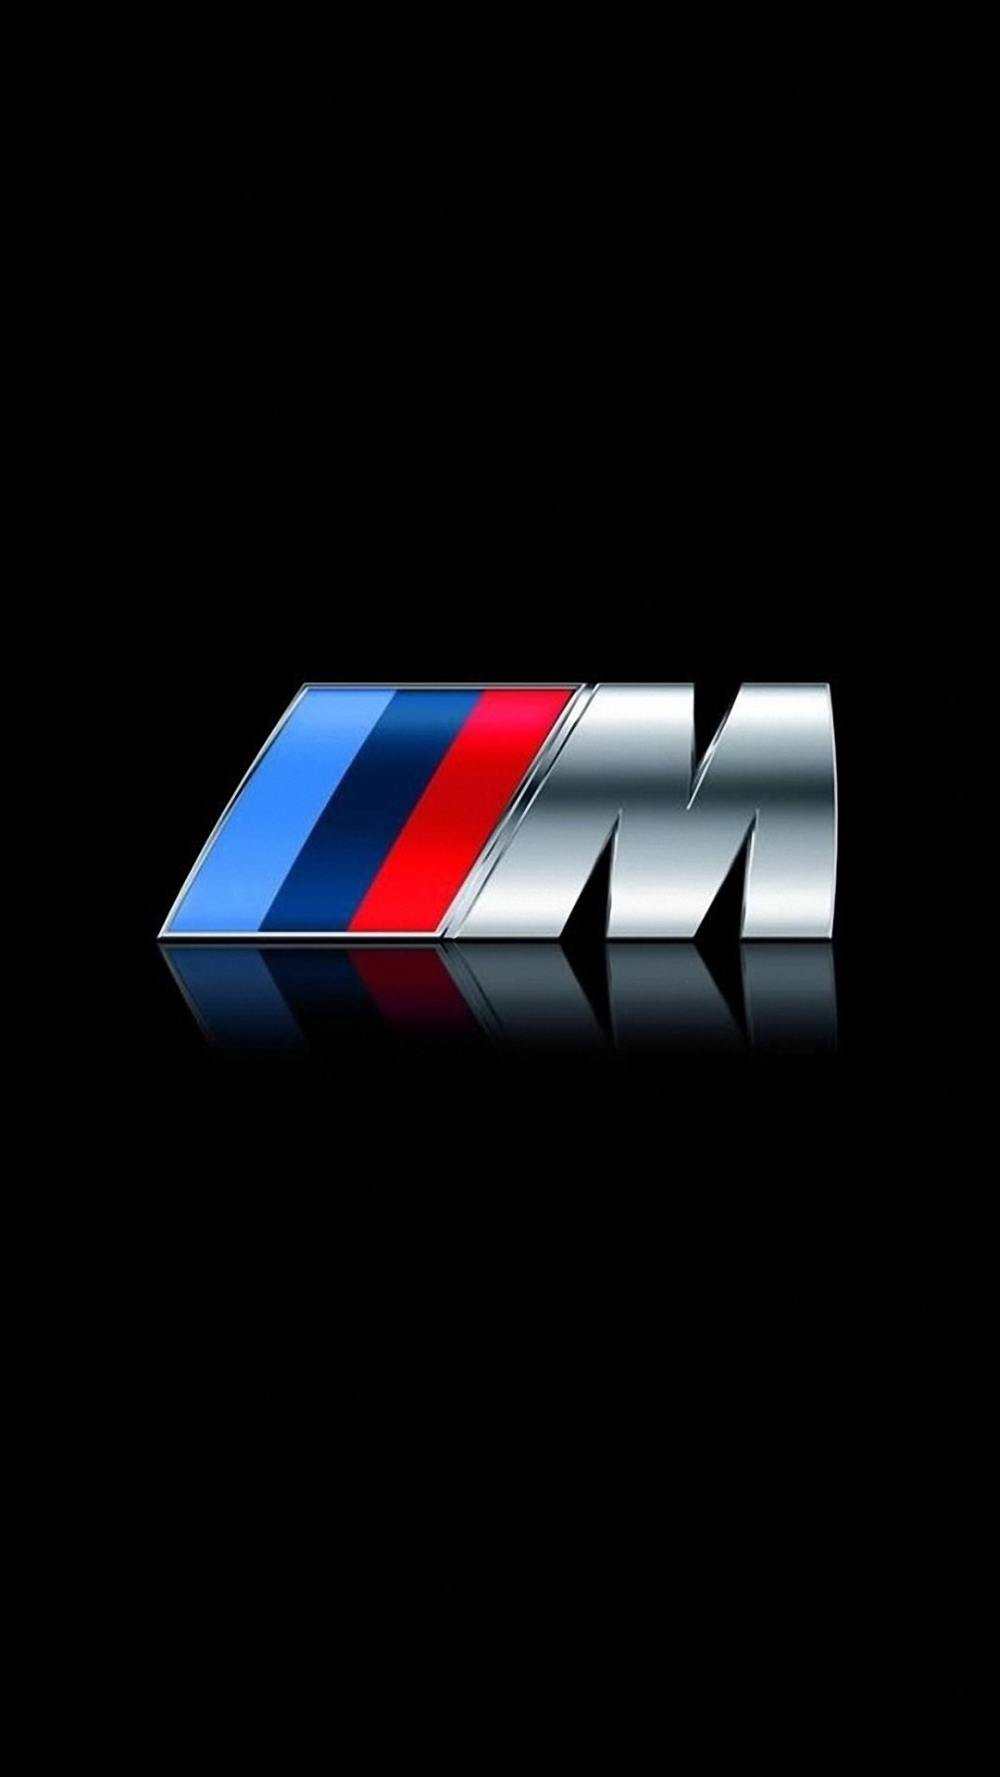 BMW Logo HD Wallpaper. Bmw wallpaper, Bmw